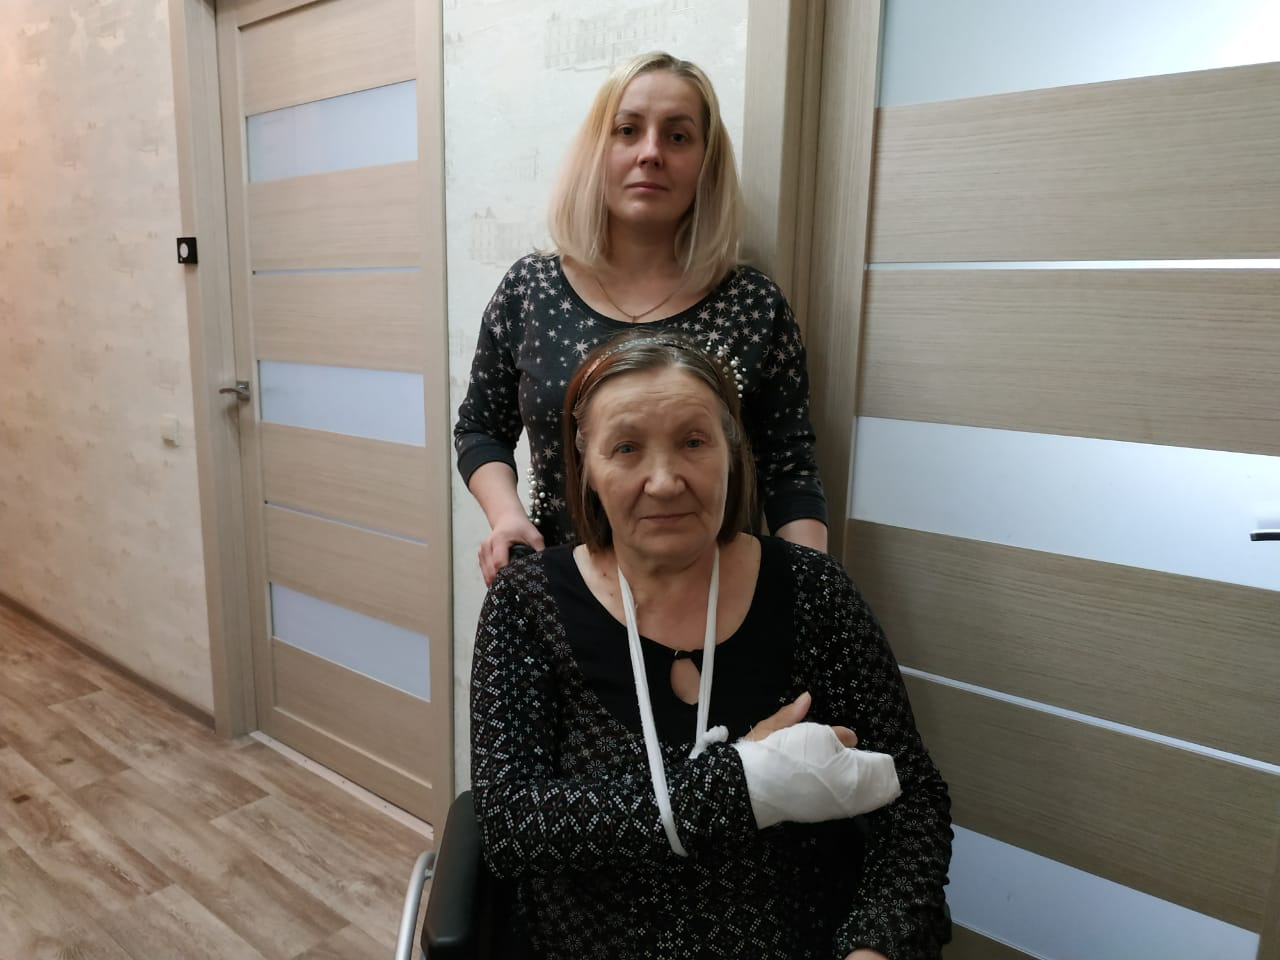 Из-за отсутствия тест-полосок Нина Фёдорова упала и сломала руку